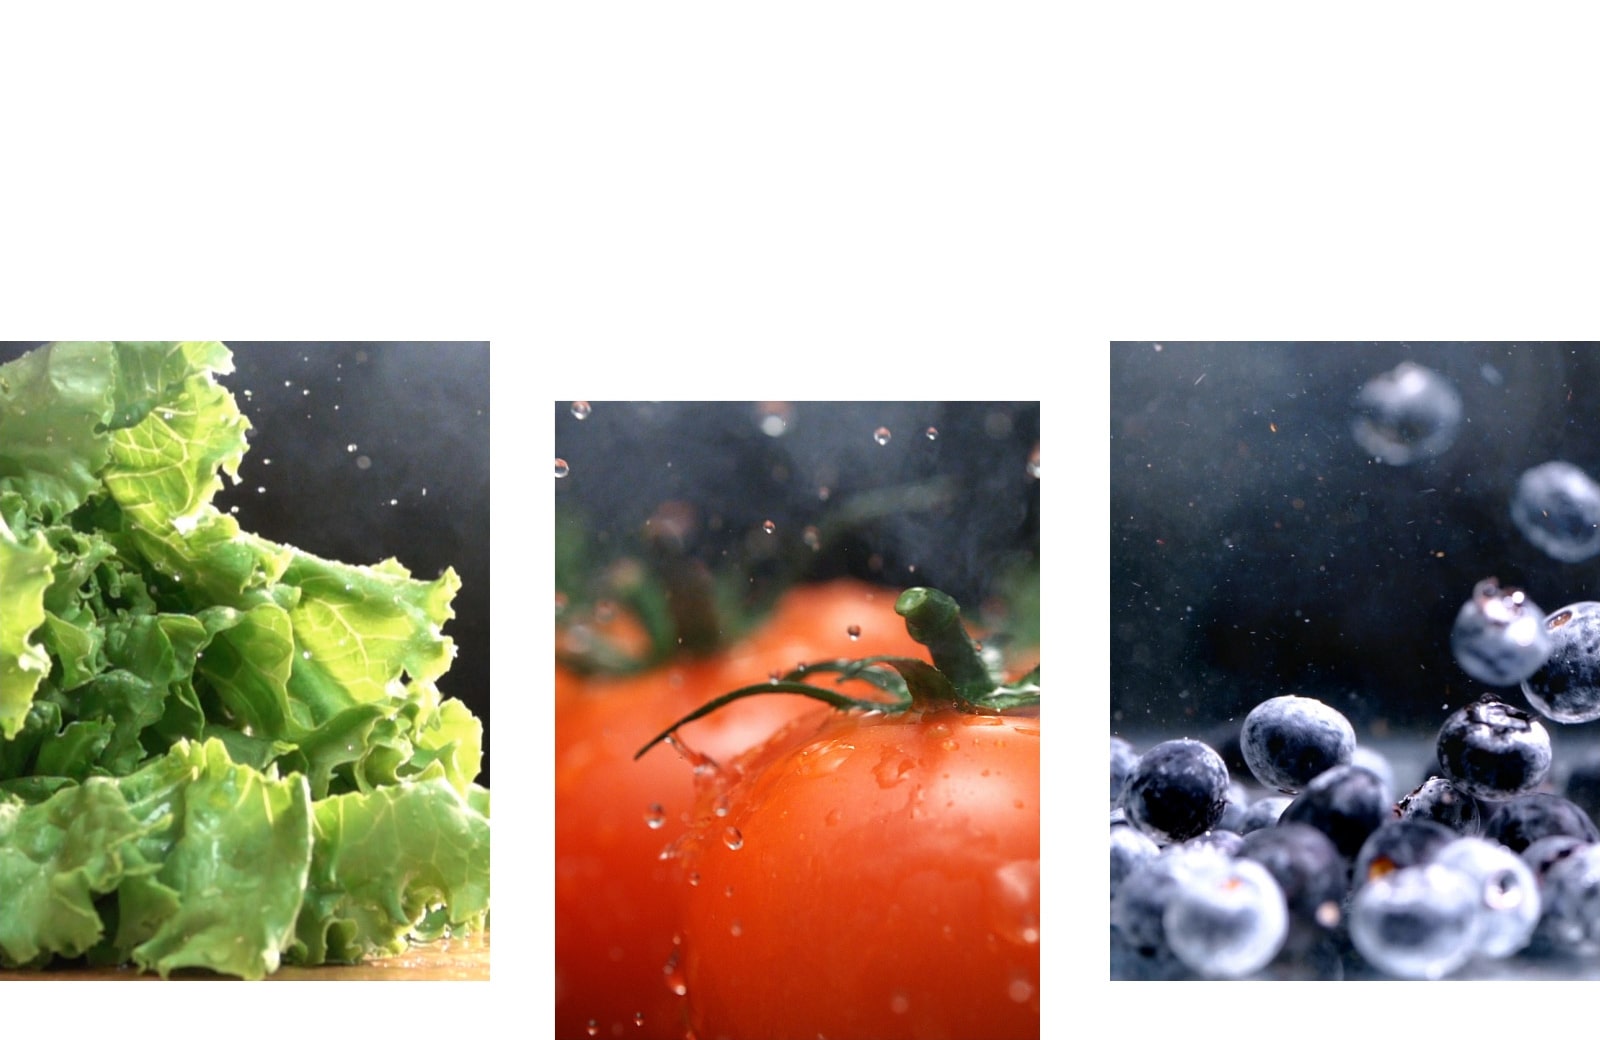 صورة لخس أخضر طازج بجوار صورة لطماطم حمراء طازجة وصورة التوت الأزرق اللامع.